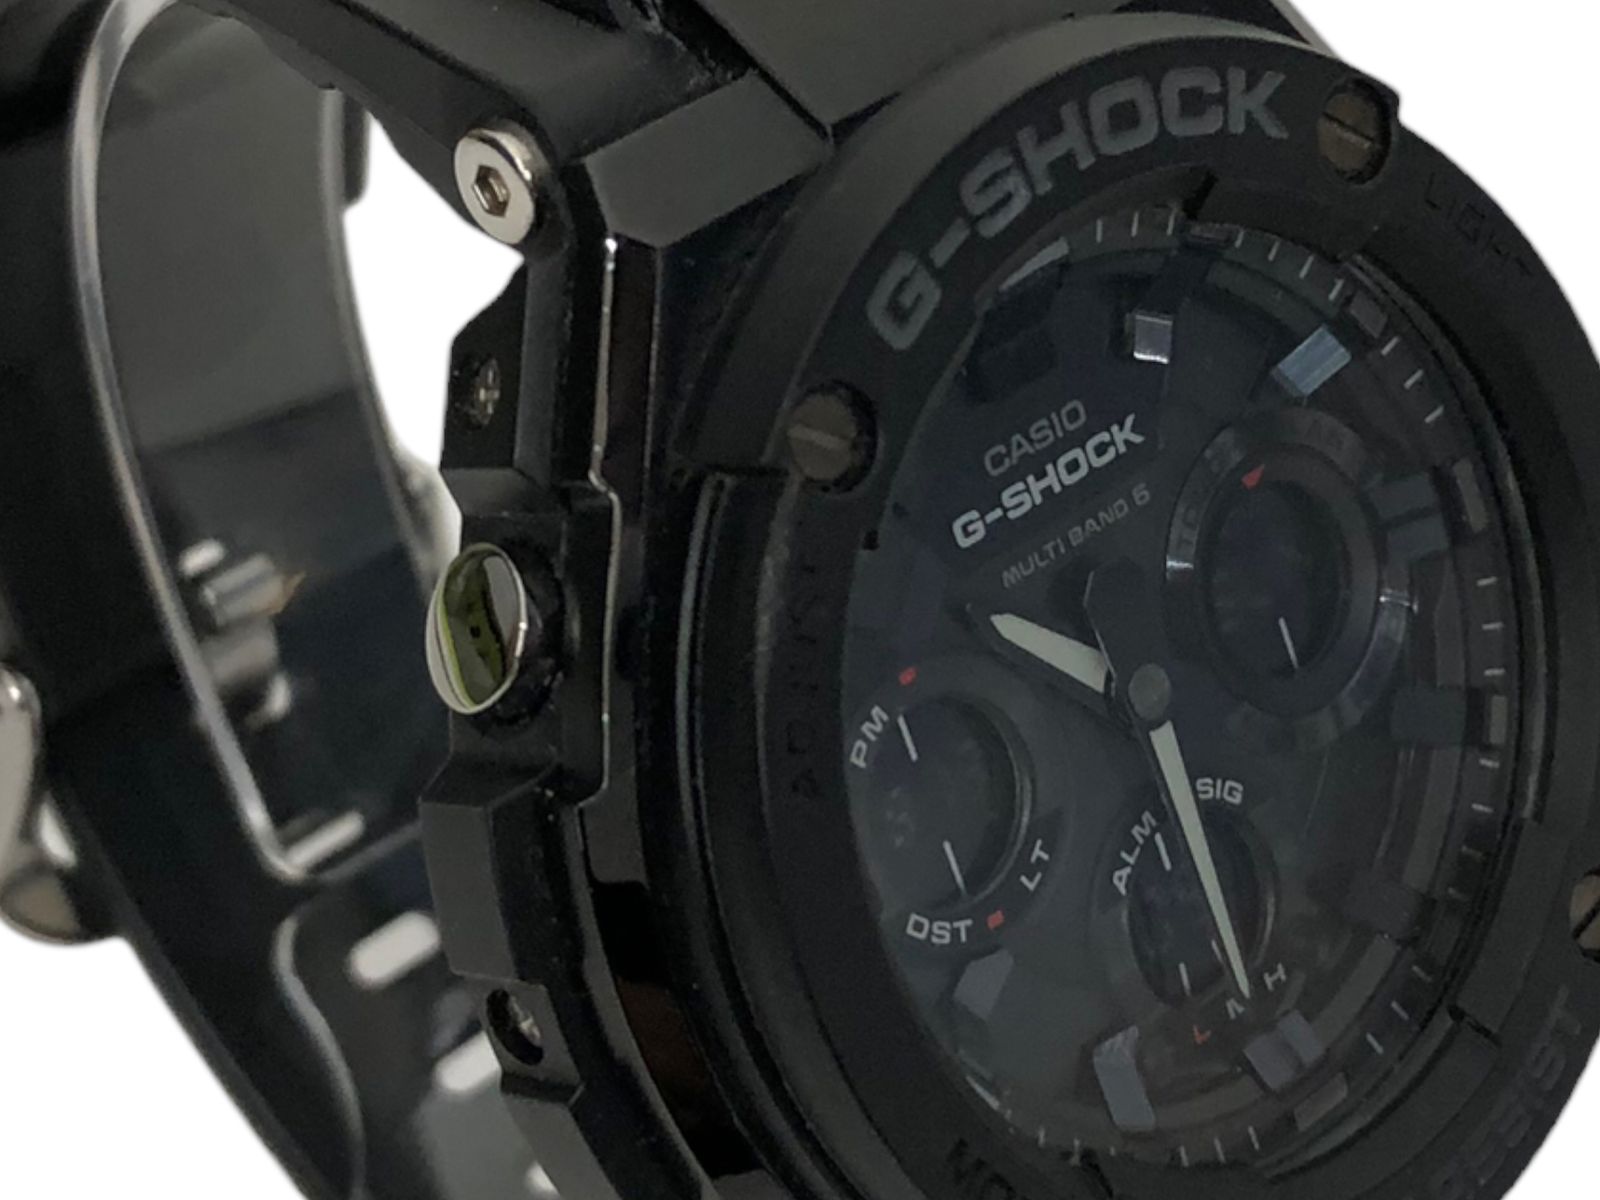 CASIO (カシオ) G-SHOCK GST-W100G-1BER デジタルアナログ腕時計 G